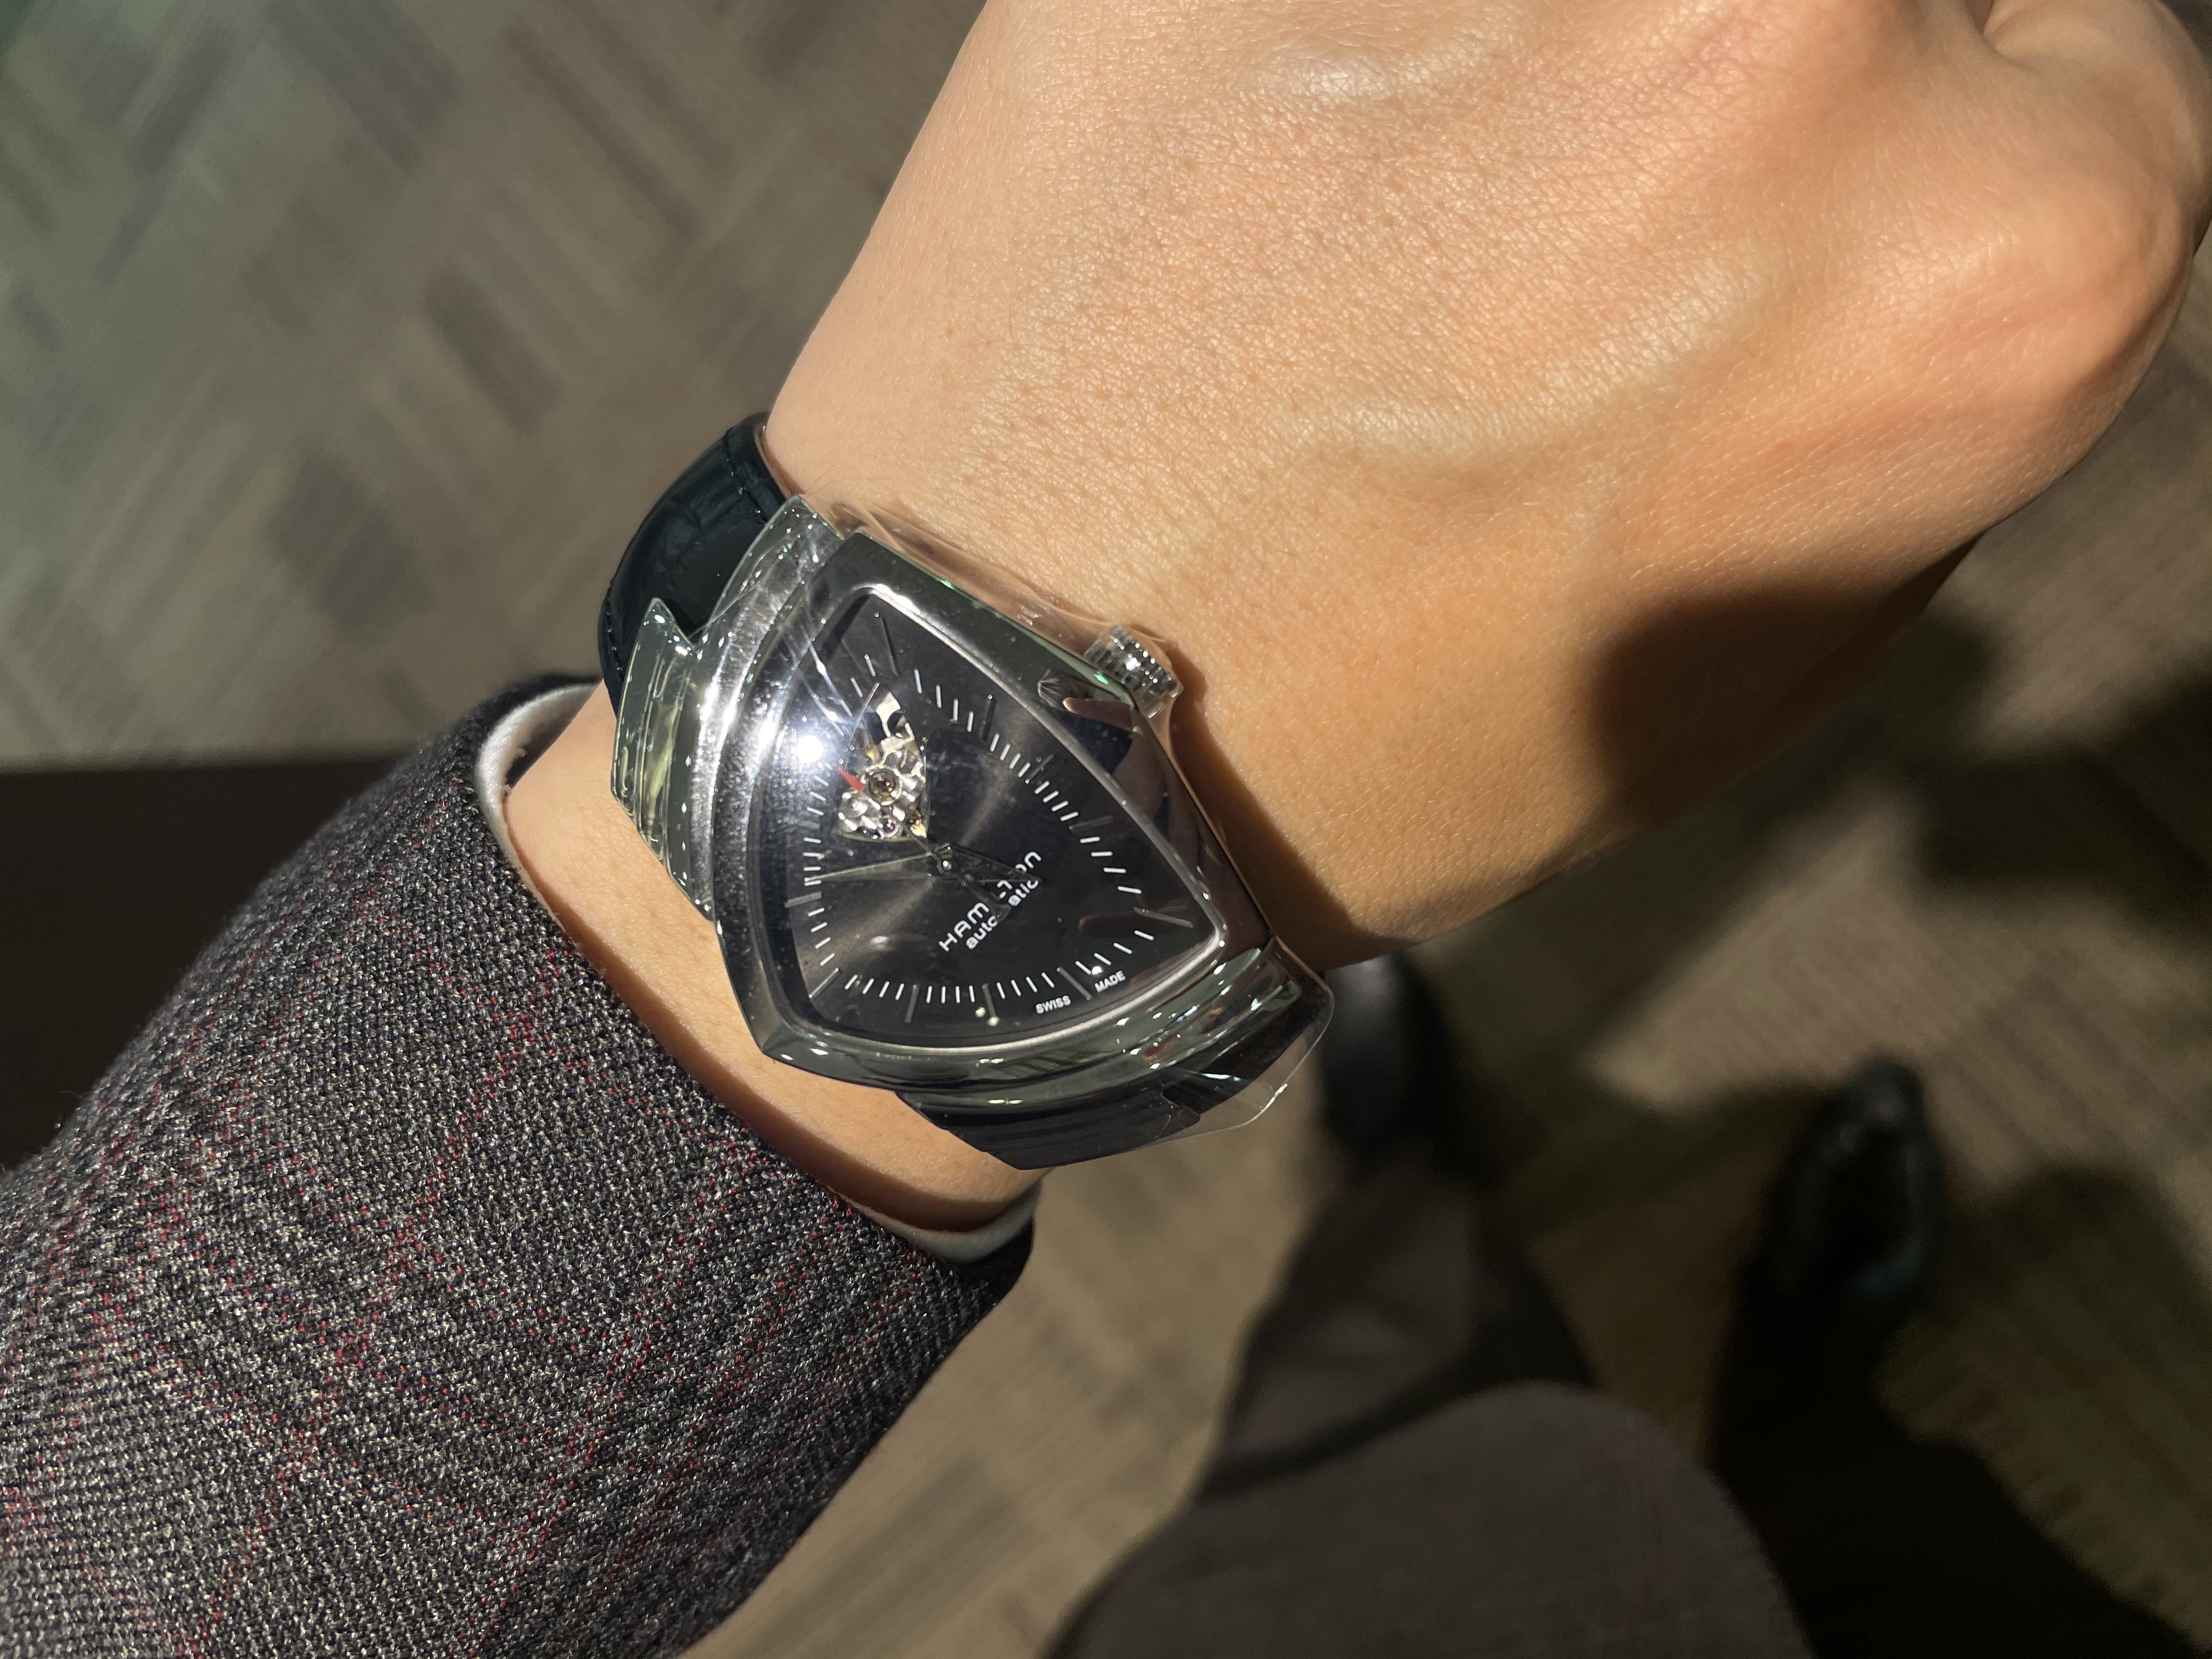 ブラック系海外並行輸入正規品 限定特価 ハミルトン ベンチュラ 腕時計 腕時計 アナログ 時計ブラック系 26 924 Laeknavaktin Is